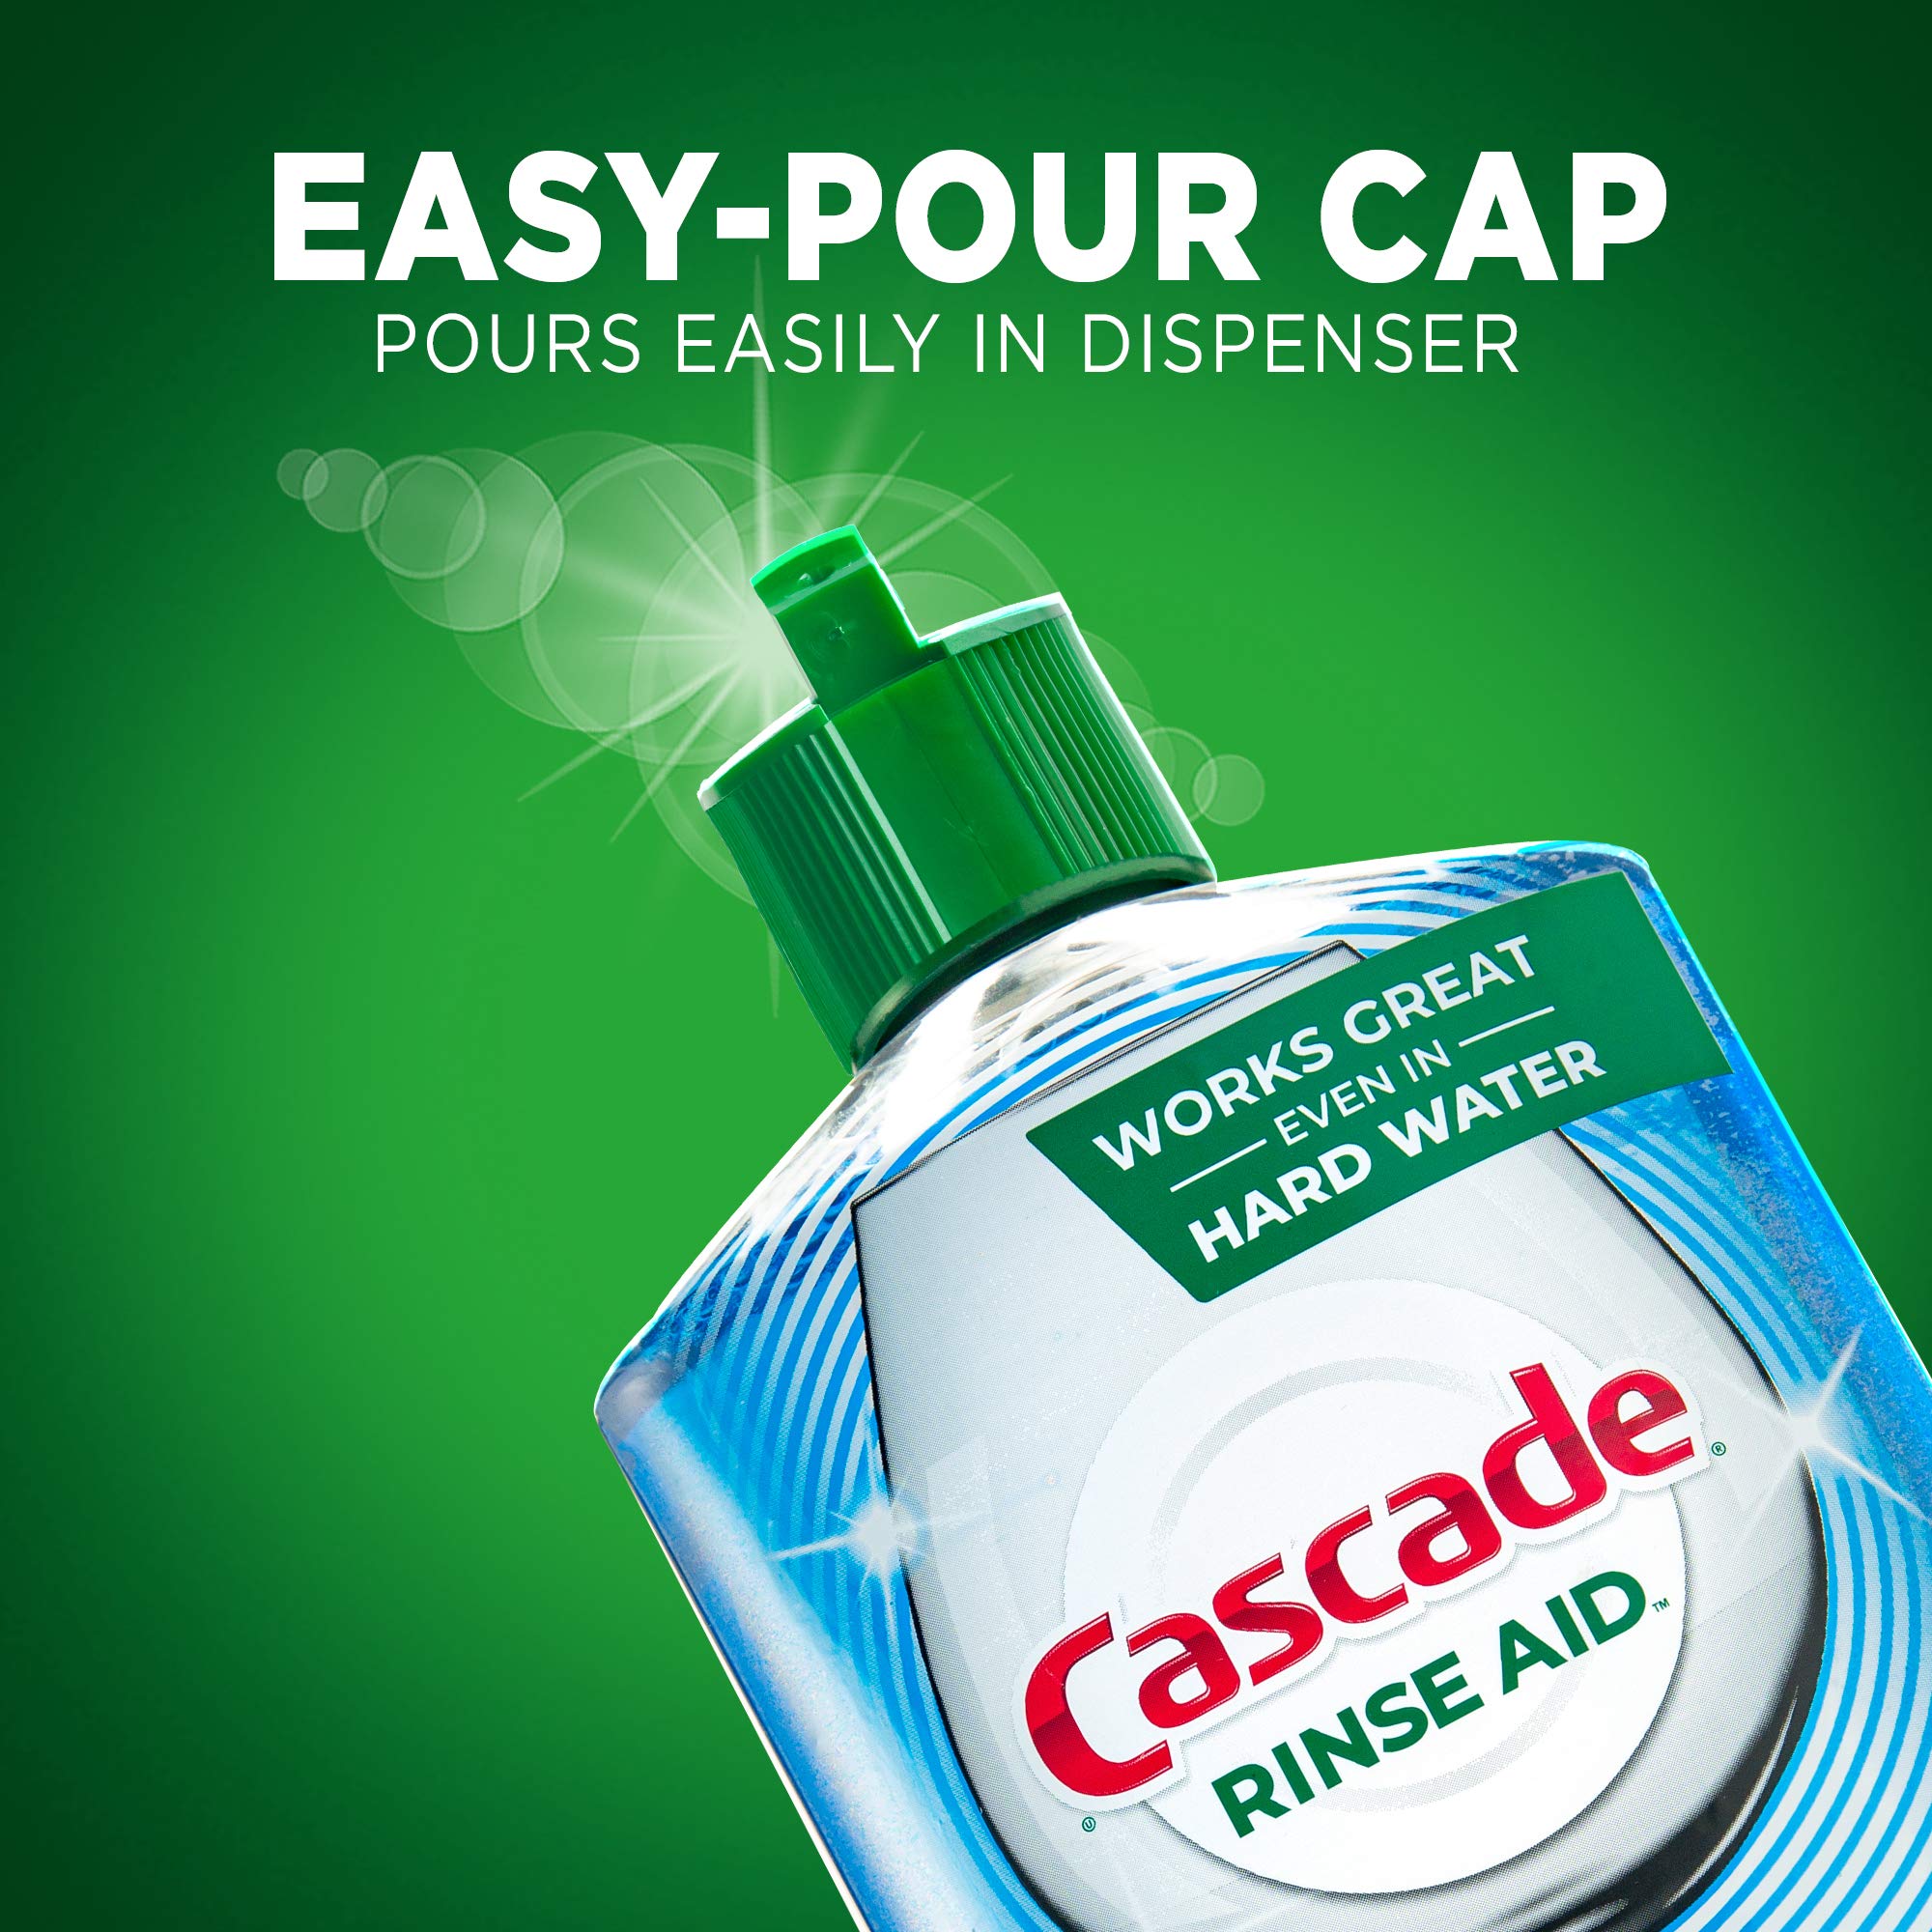 Cascade Power Dry Dishwasher Rinse Aid, 16 fl oz (2 Pack)